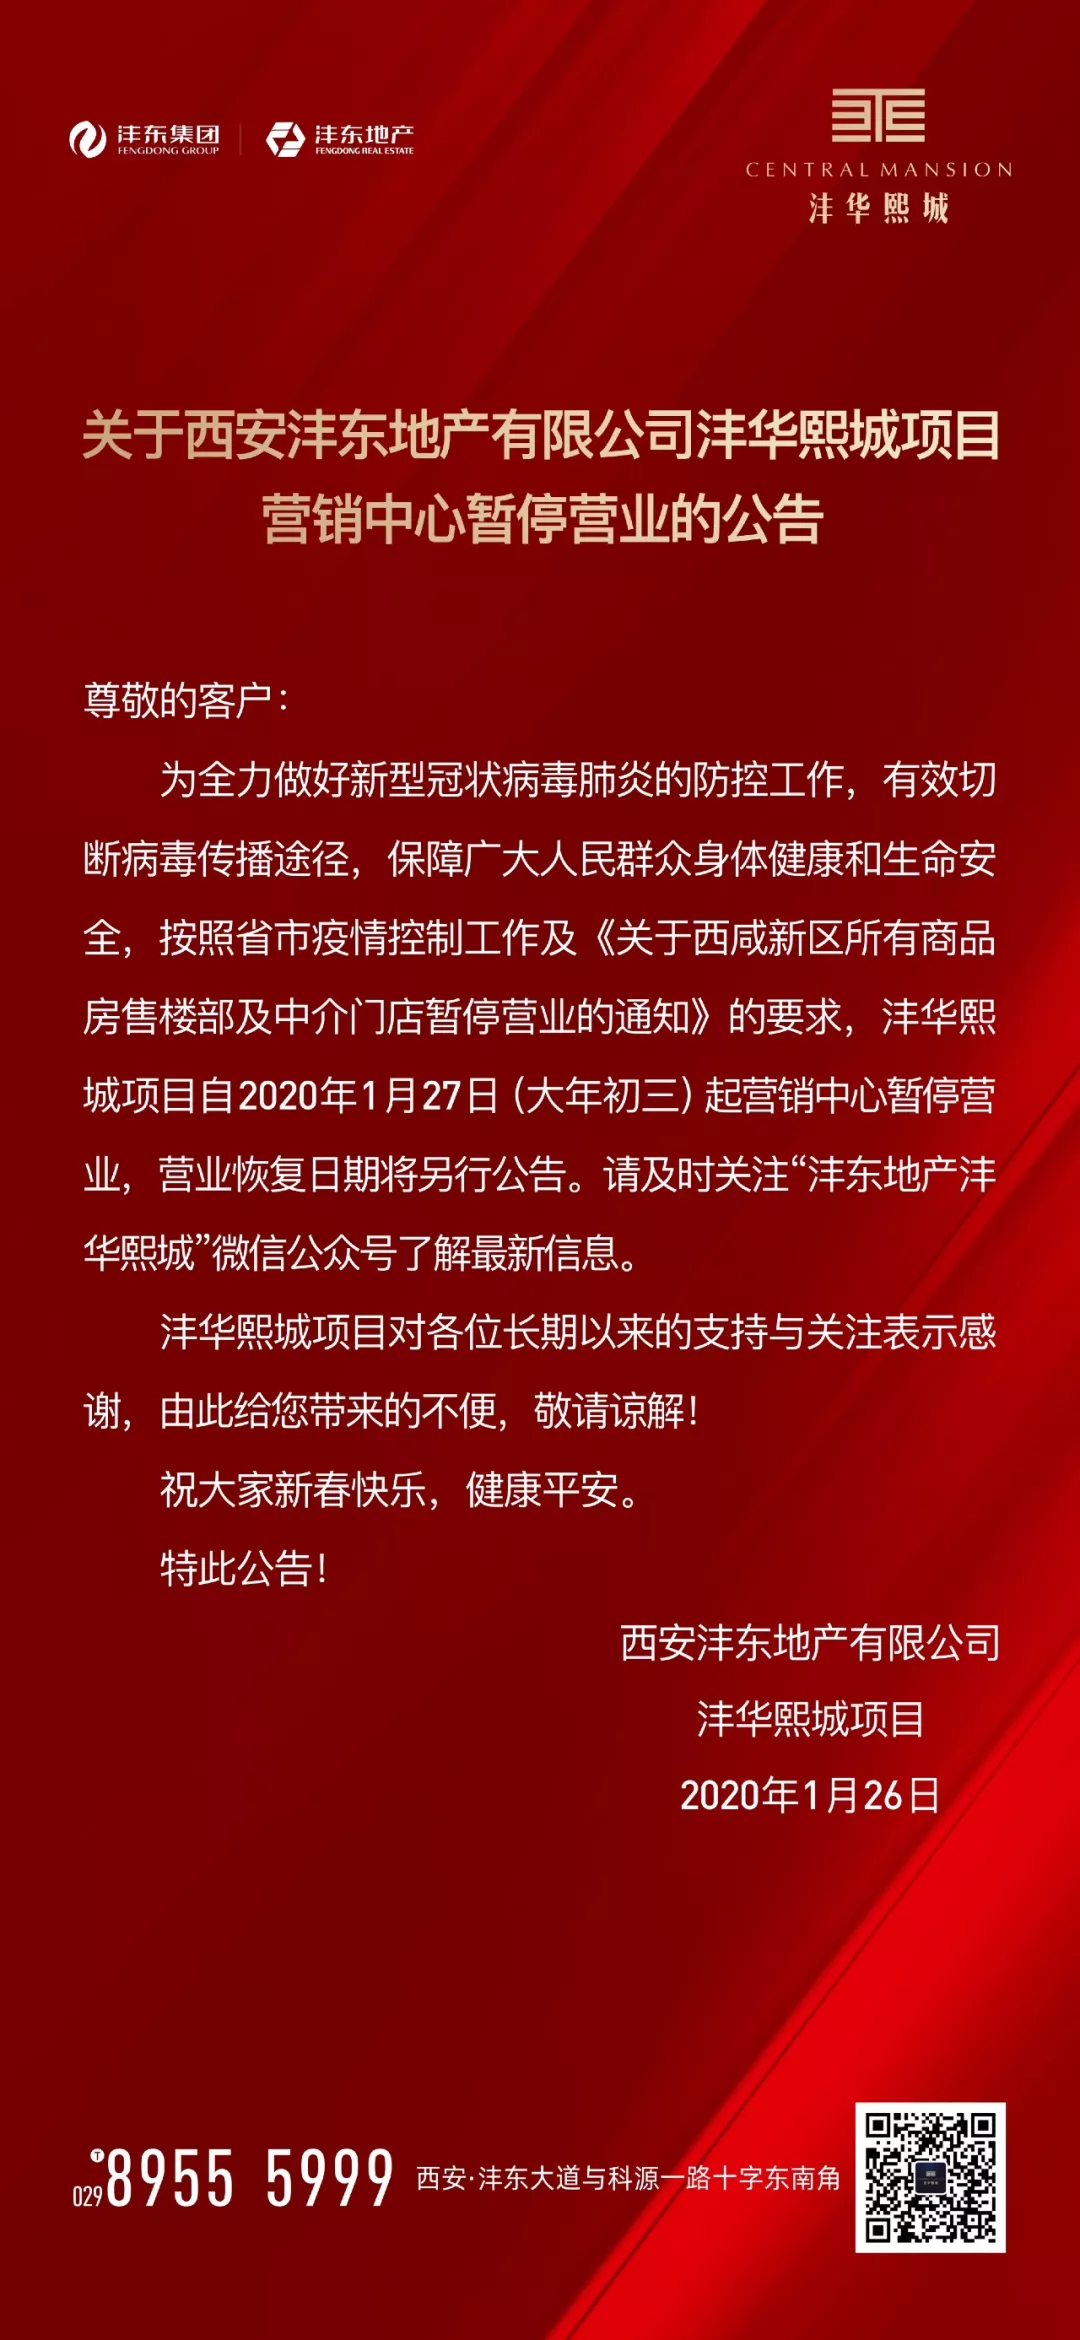 关于西安沣东地产有限公司沣华熙城项目营销中心暂停营业的公告